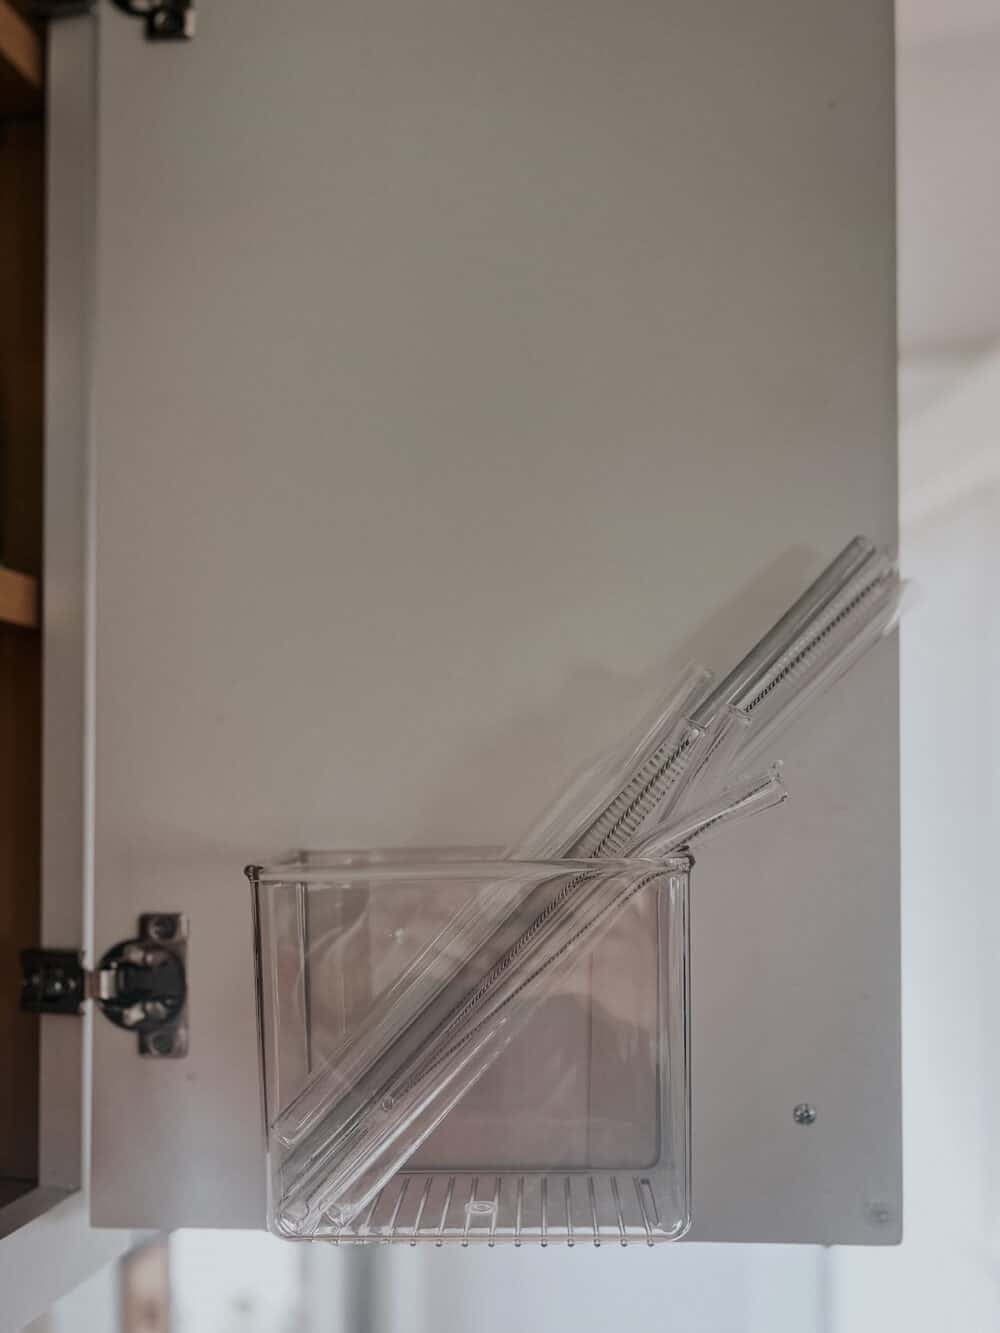 Straw organizer on a cabinet door